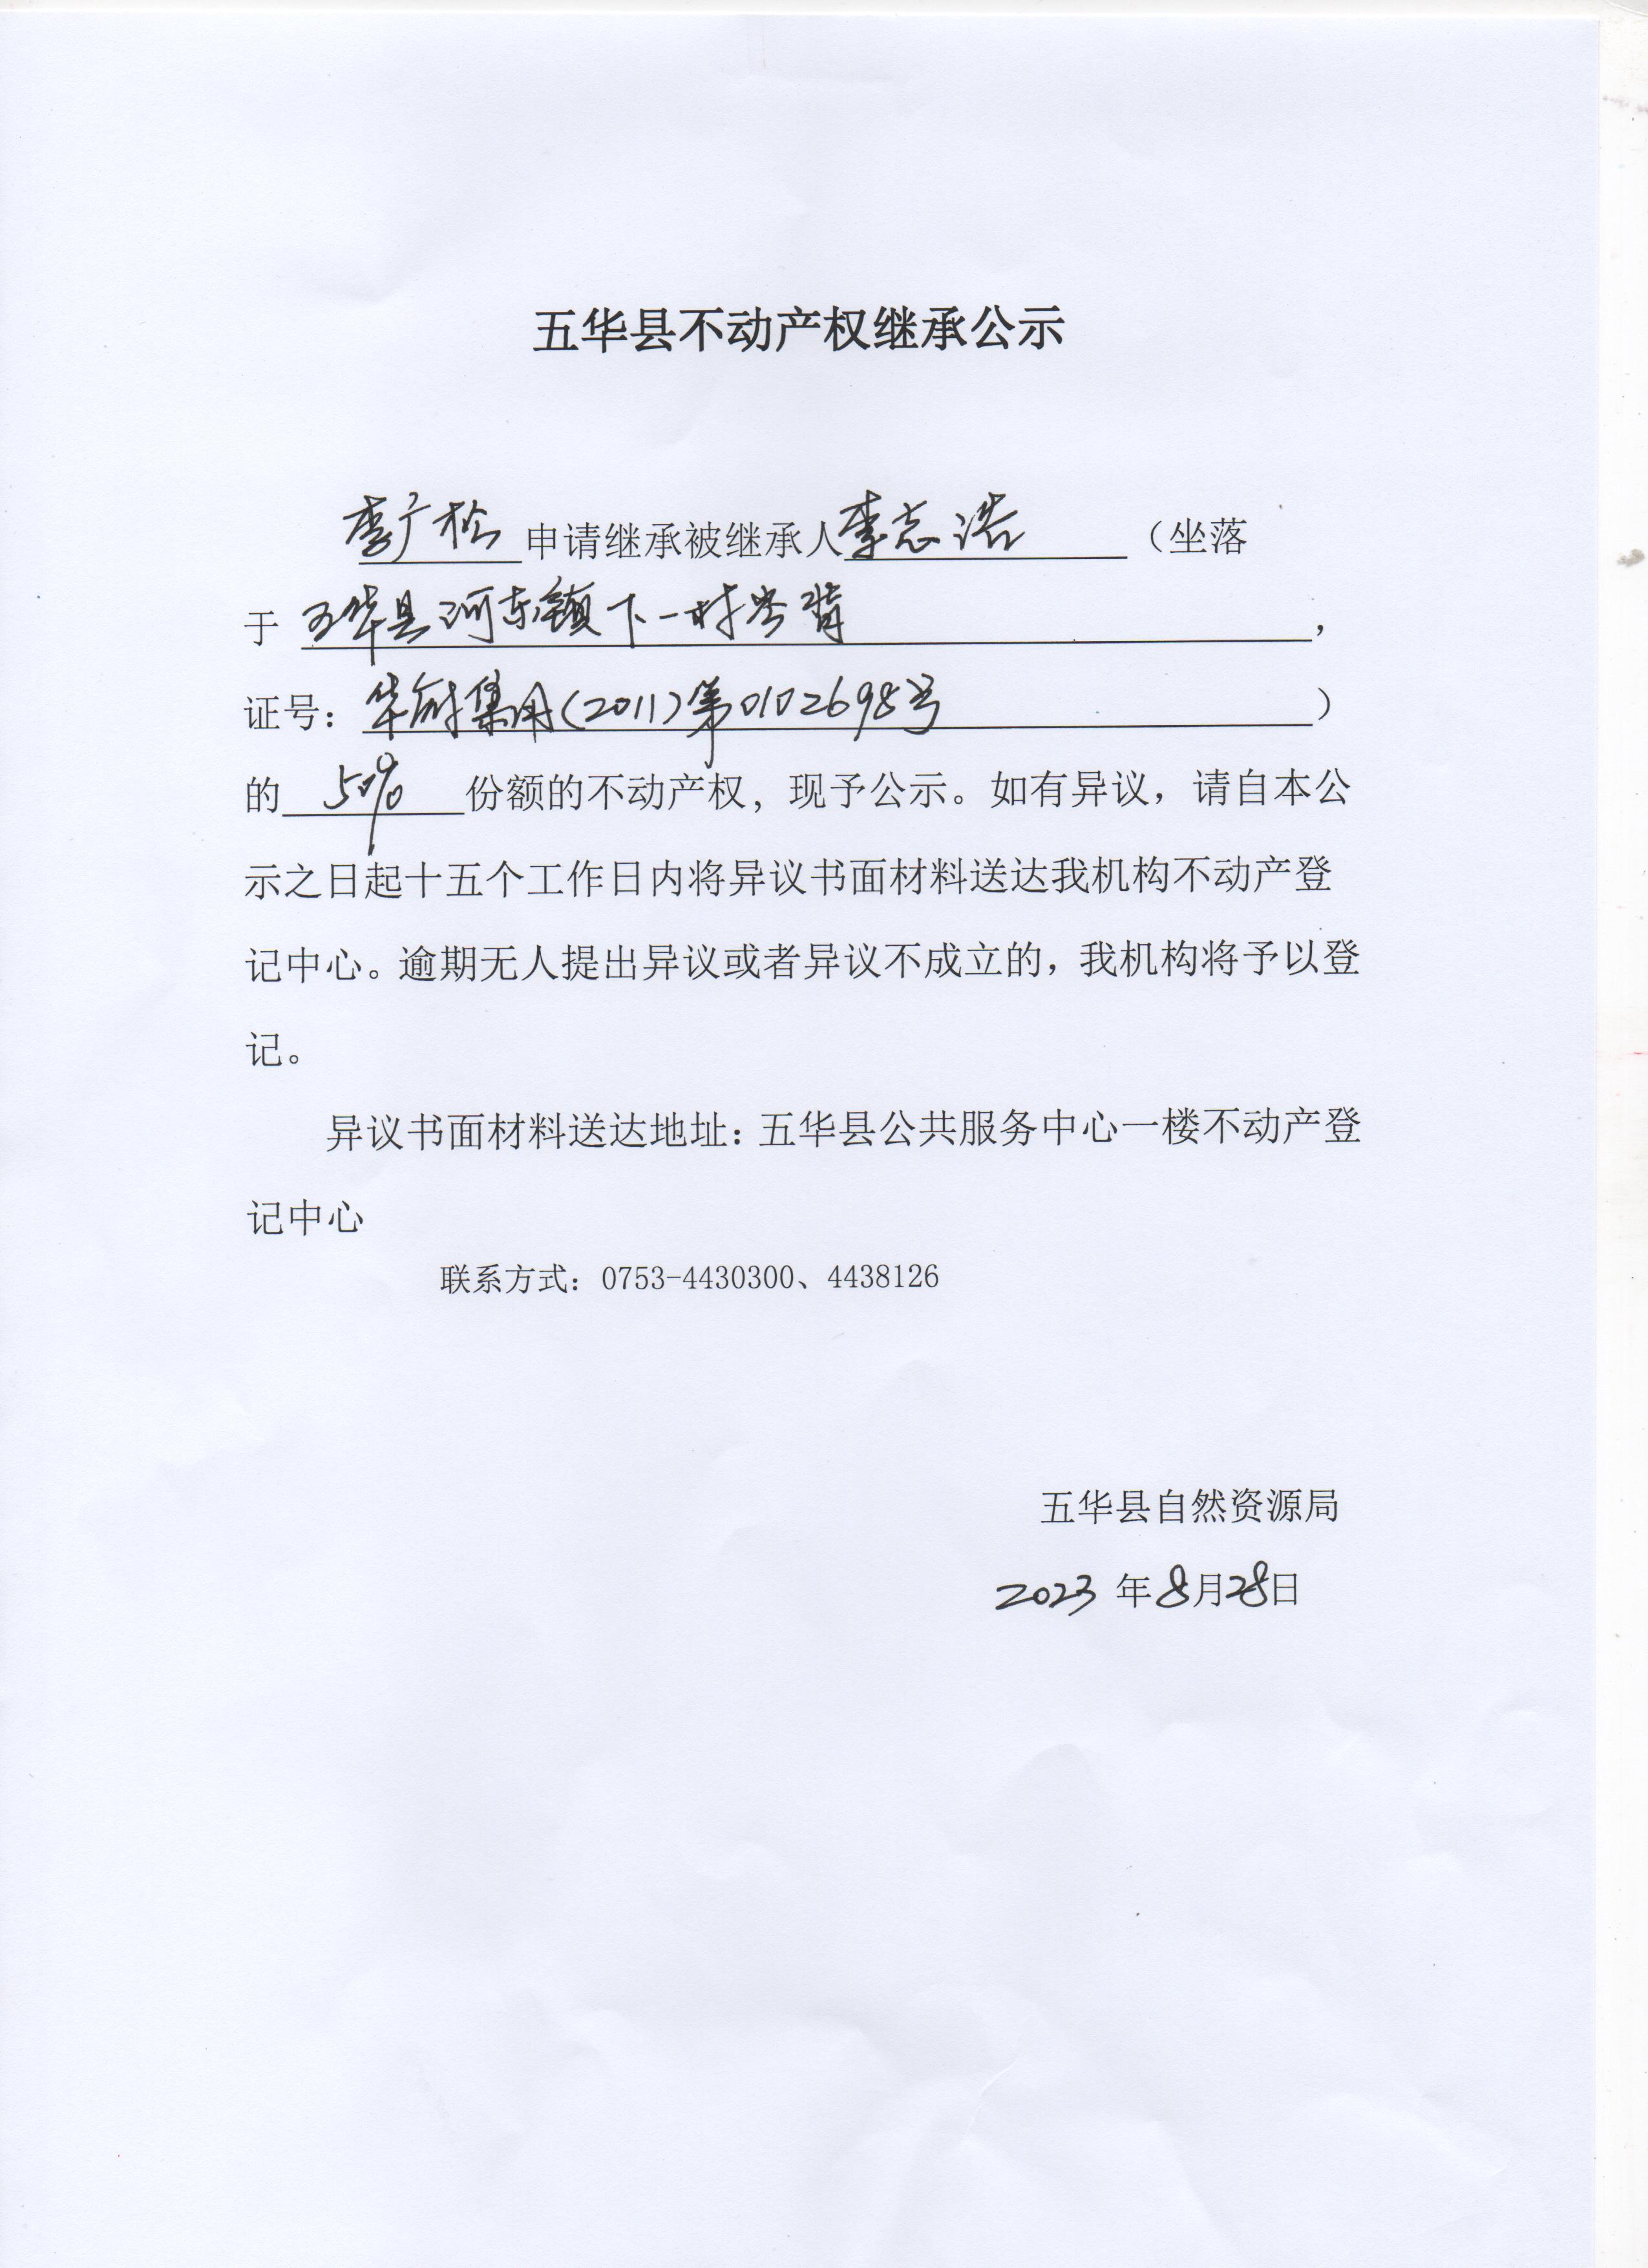 五华县不动产权继承公示（李志浩）3 001.jpg